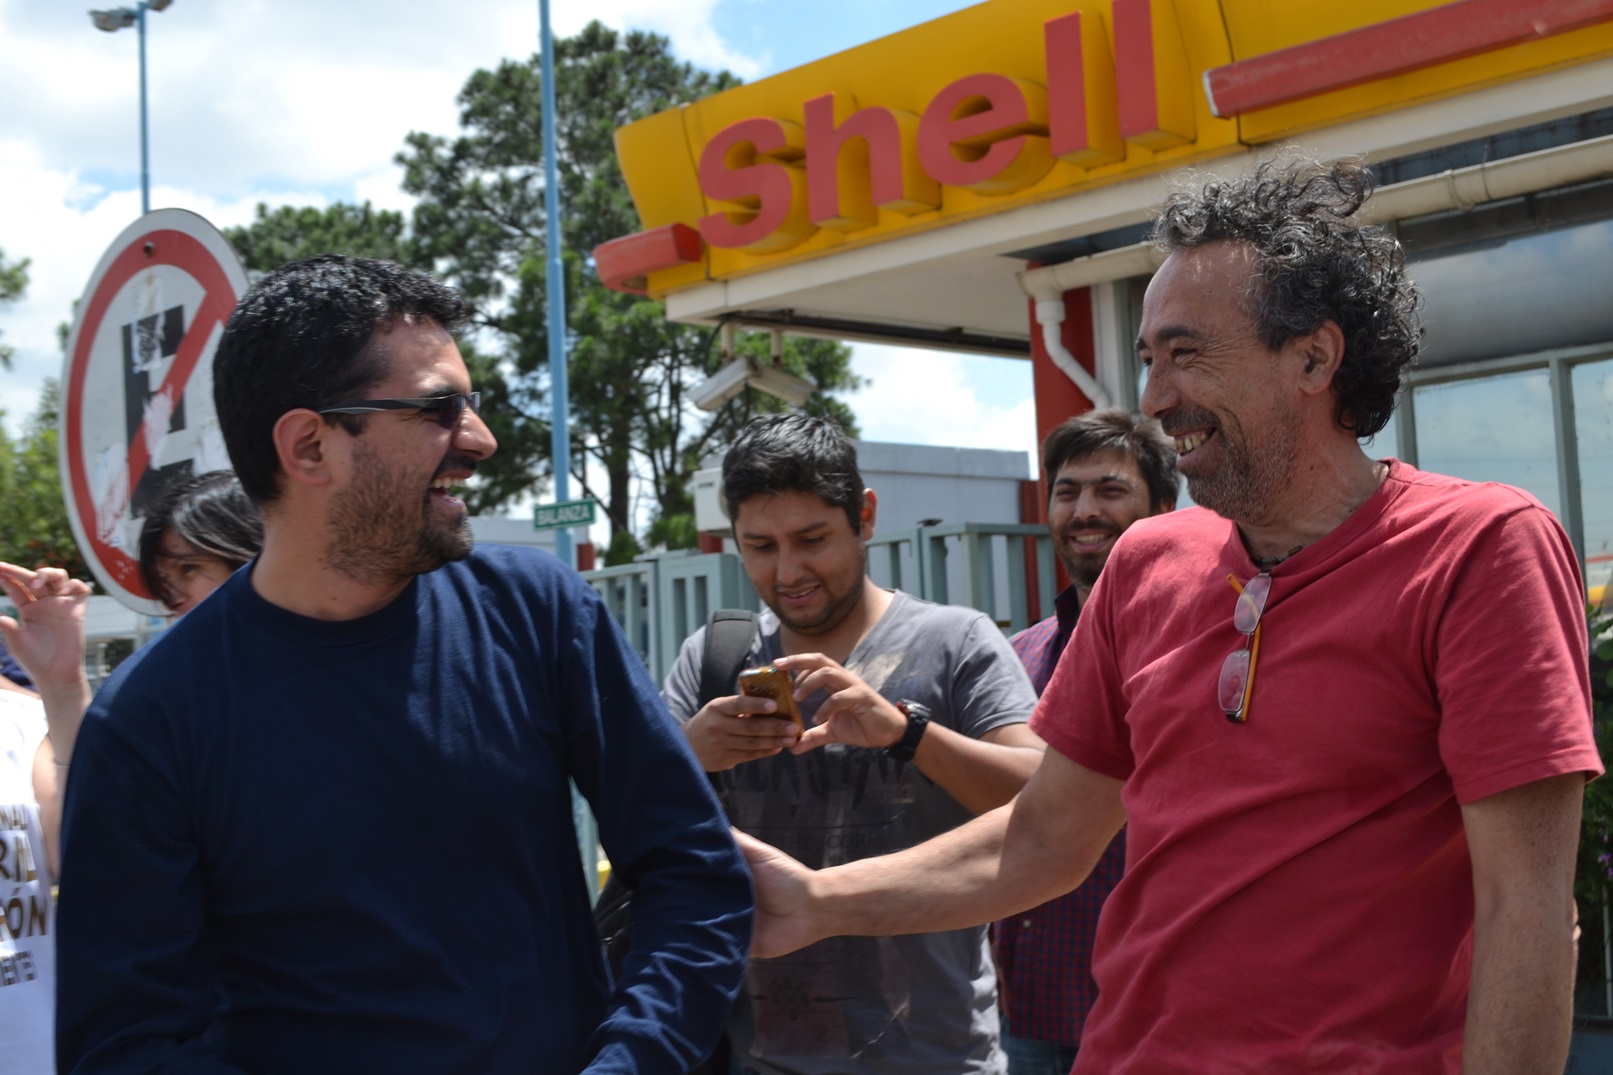 Activista sindical ganó pulseada contra Shell y Aranguren y fue reincorporado